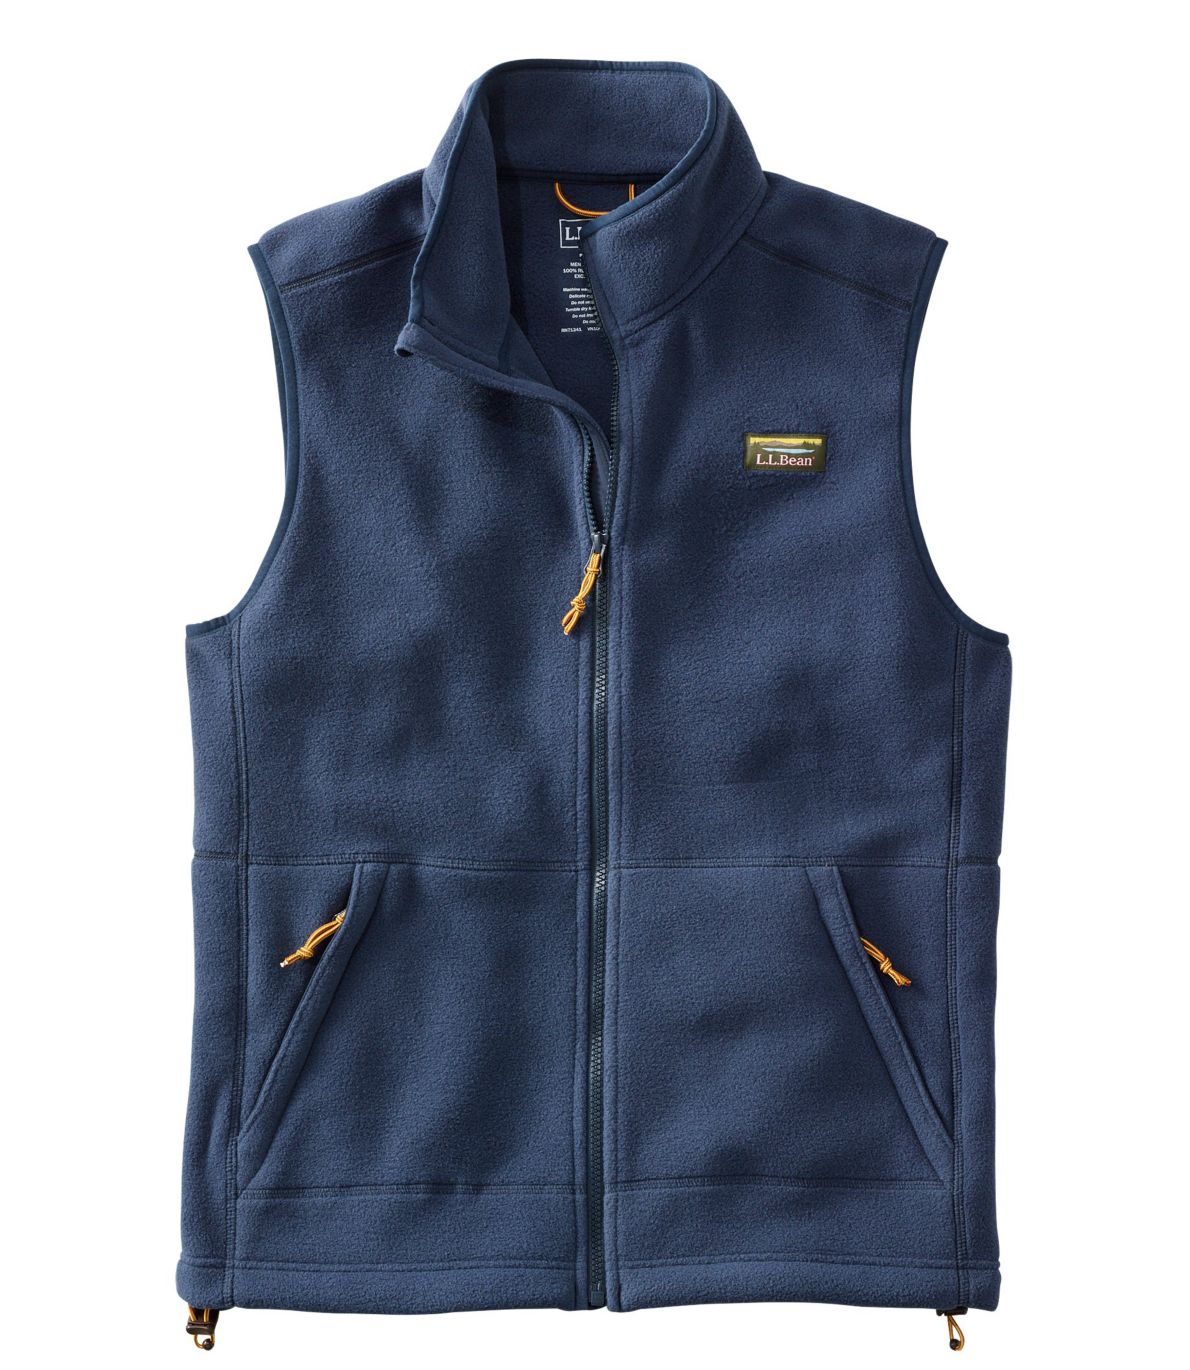 Men's Mountain Classic Fleece Vest